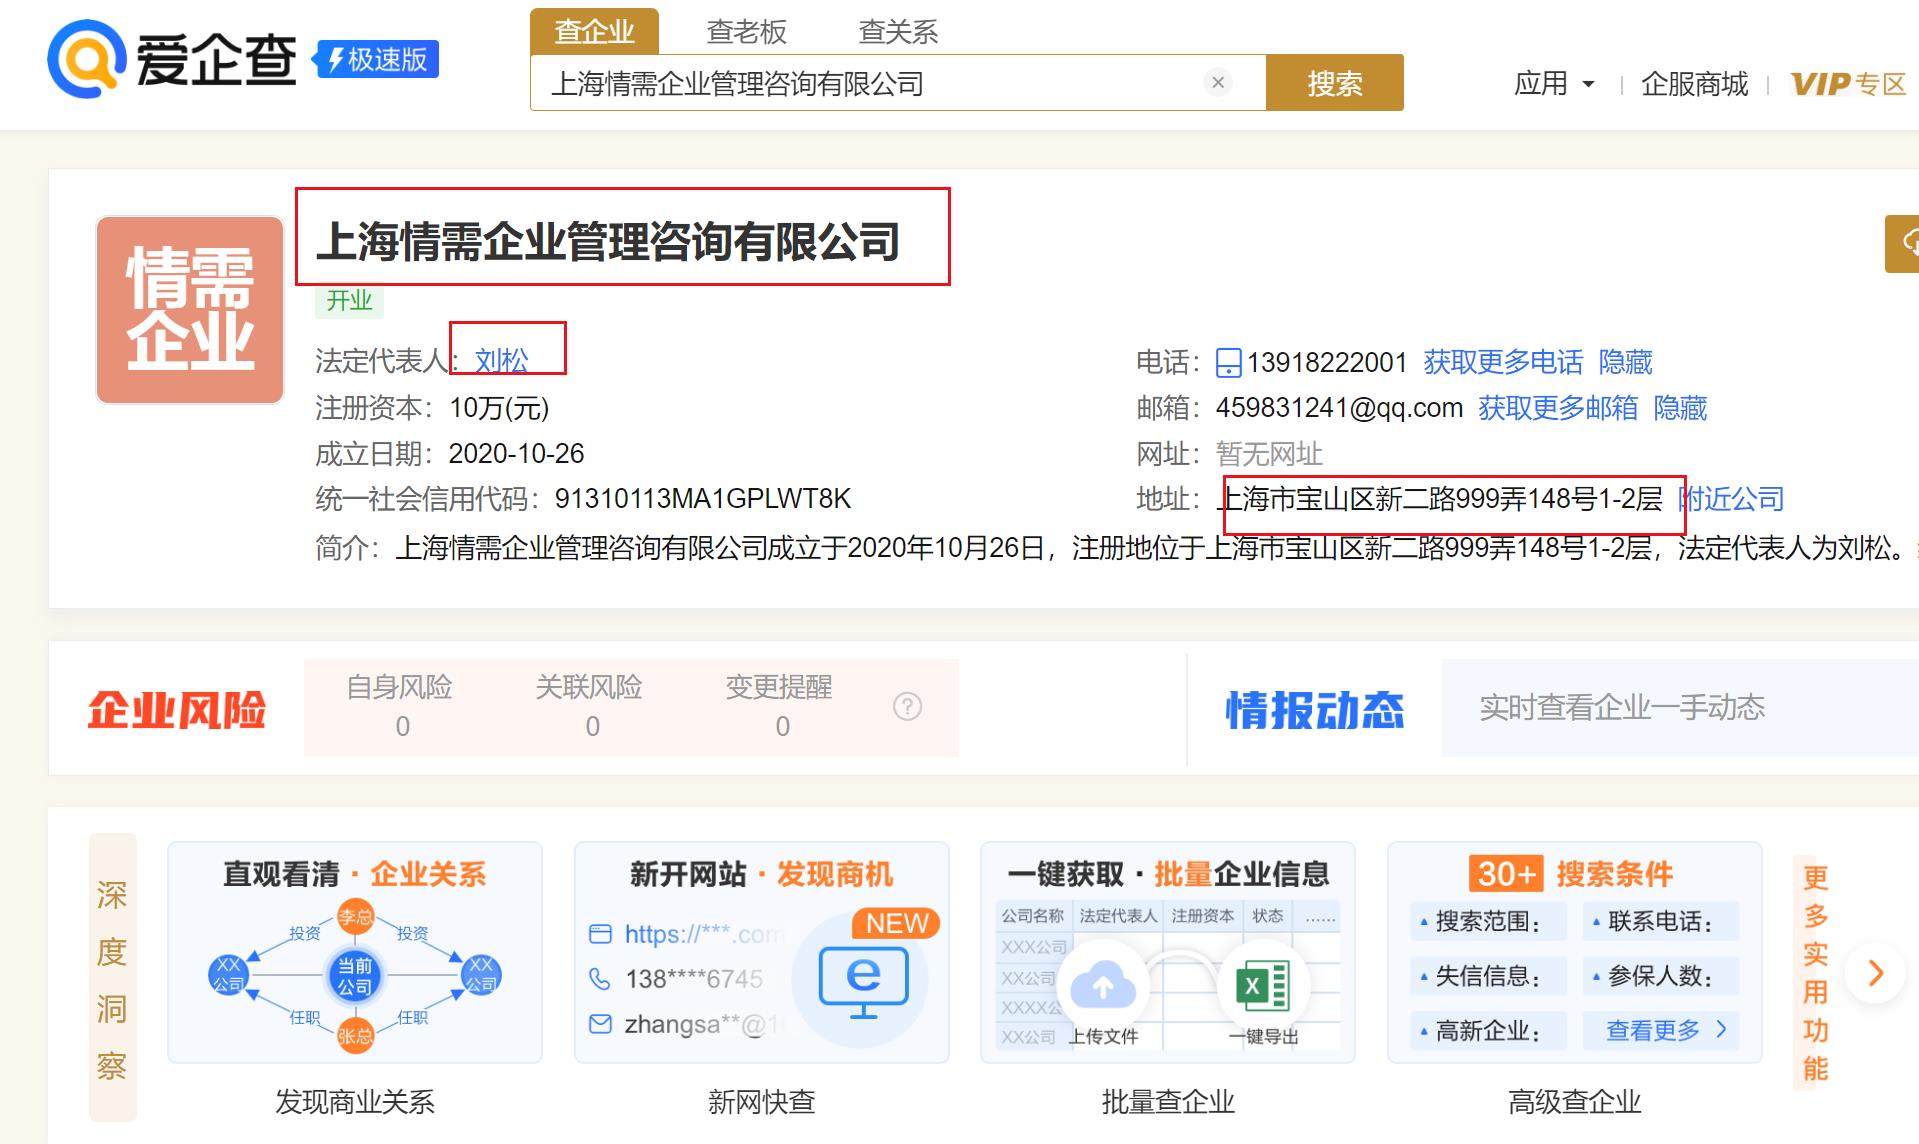 上海情需企业管理咨询有限公司的老板刘松是个骗子